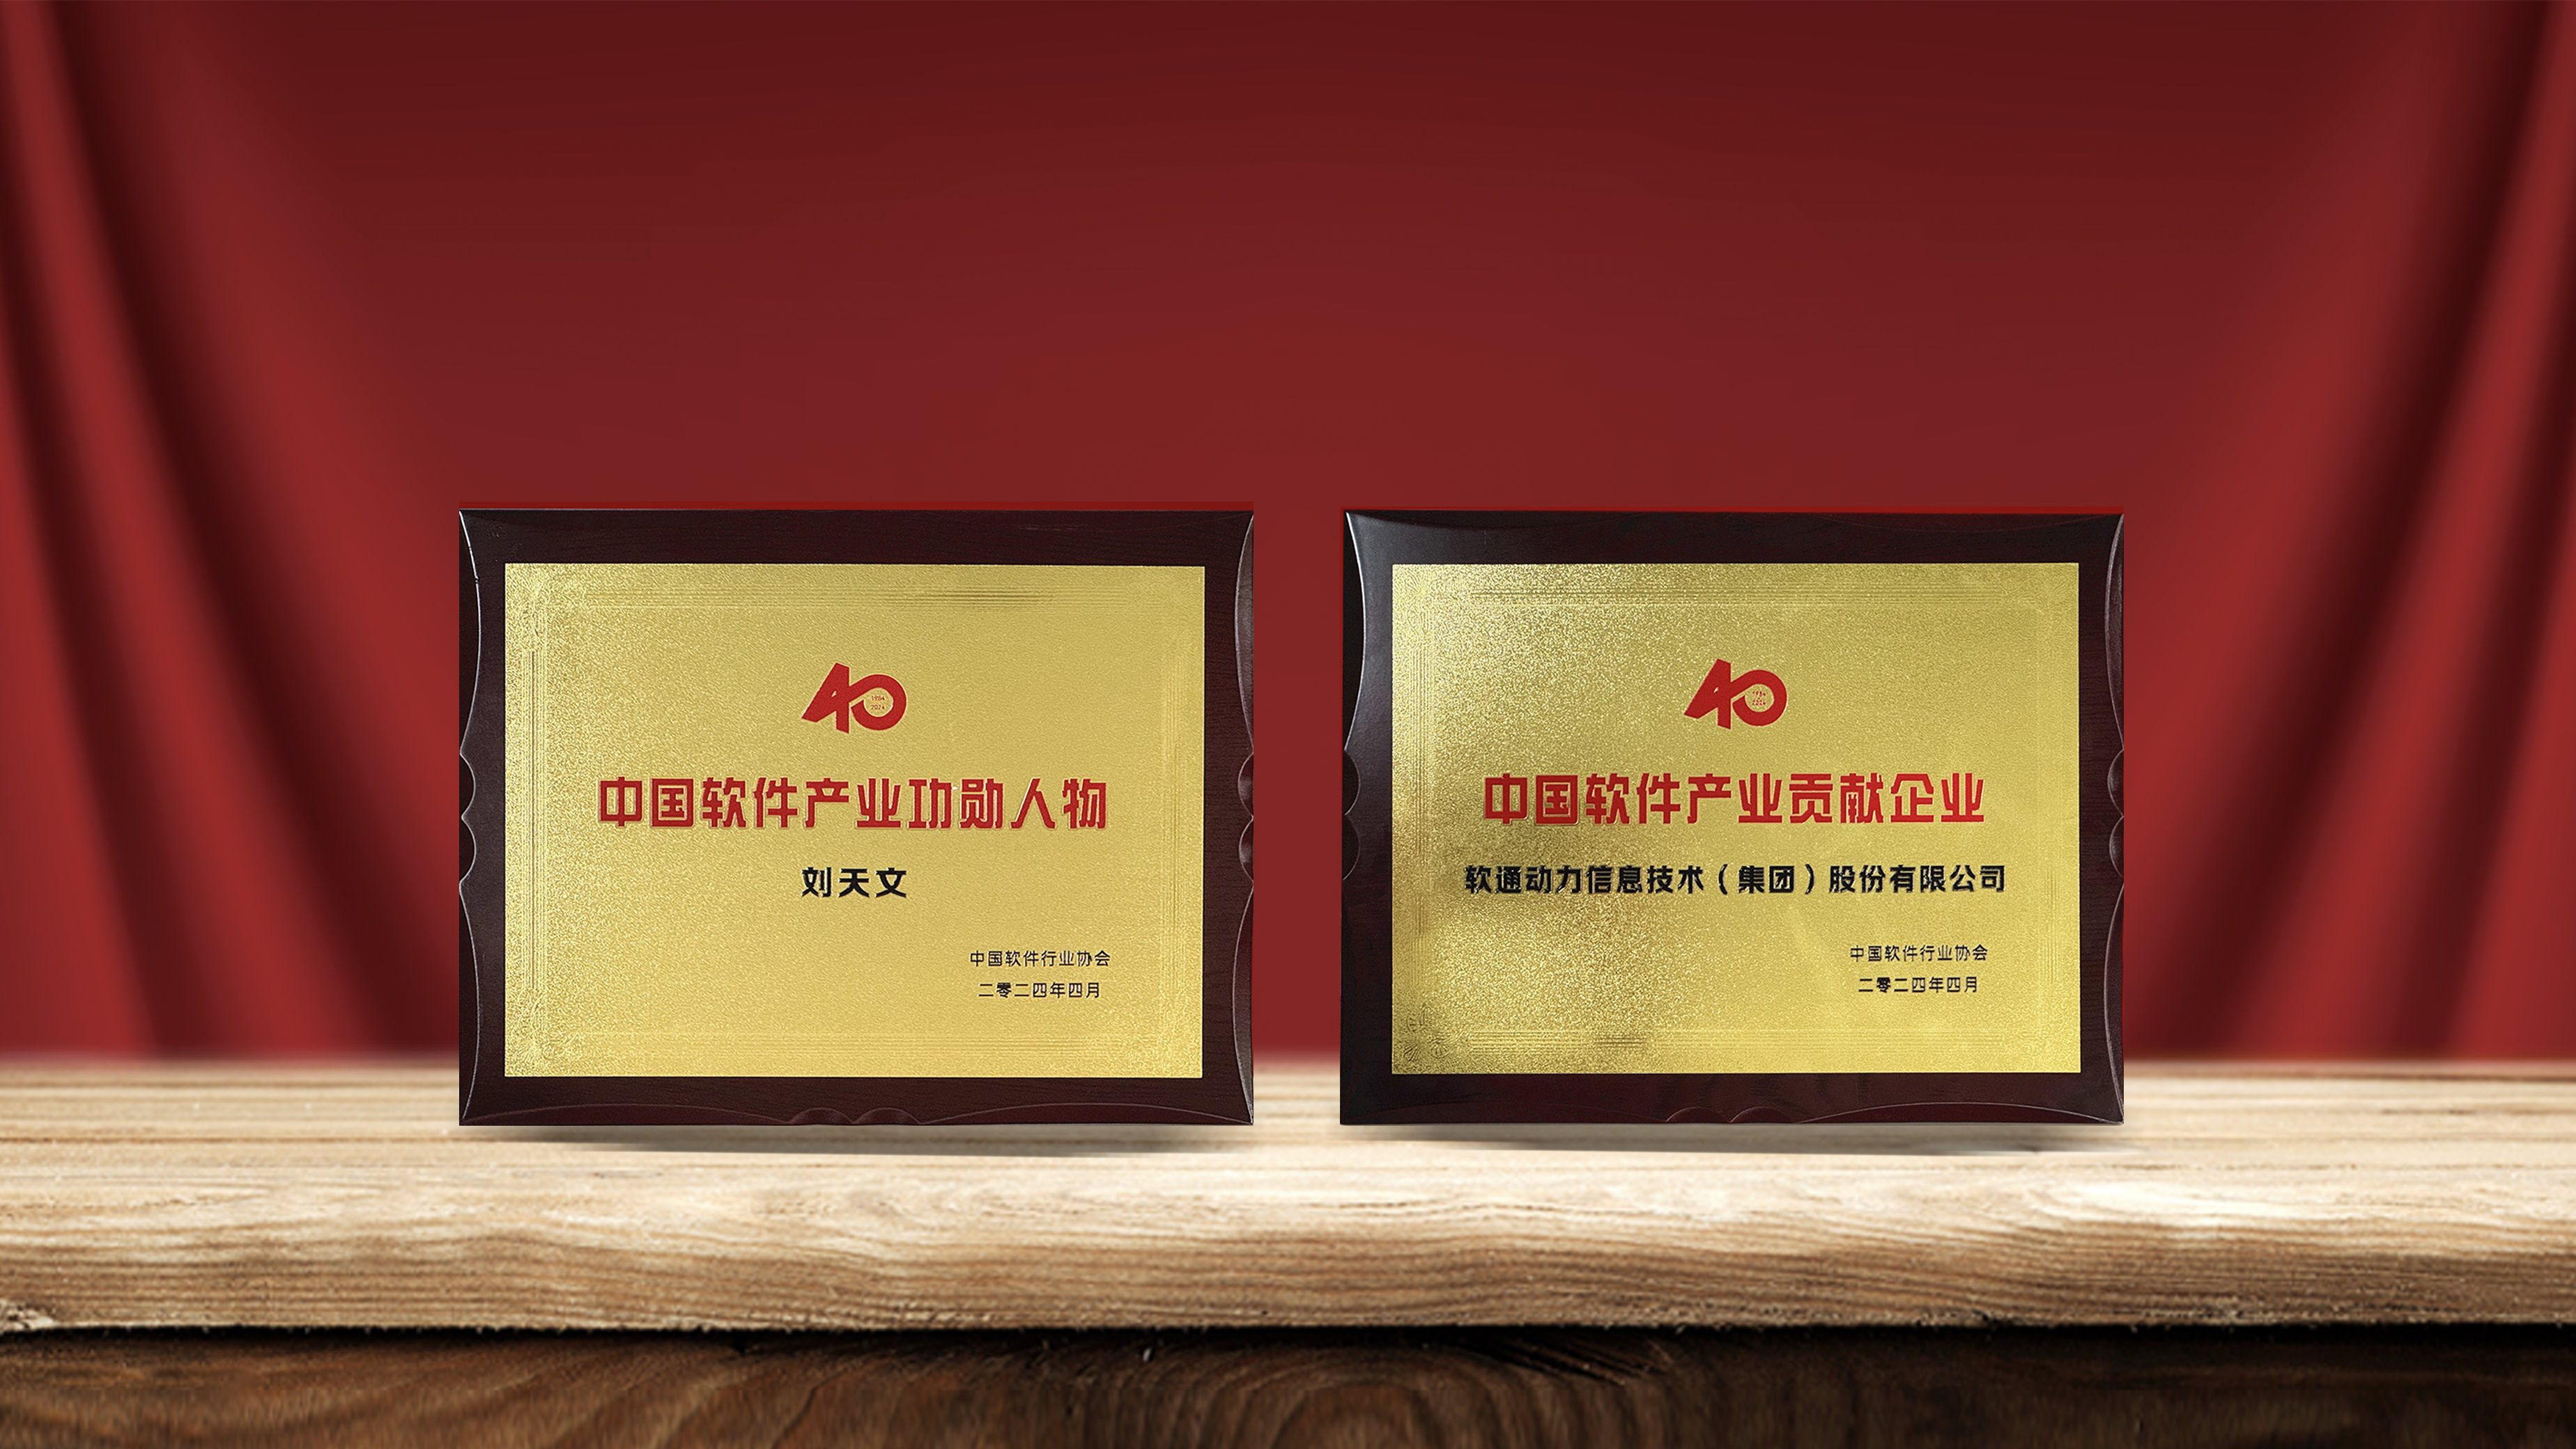 伟德BETVLCTOR1946获产业权威认可  刘天文荣选“中国软件产业40年功勋人物”